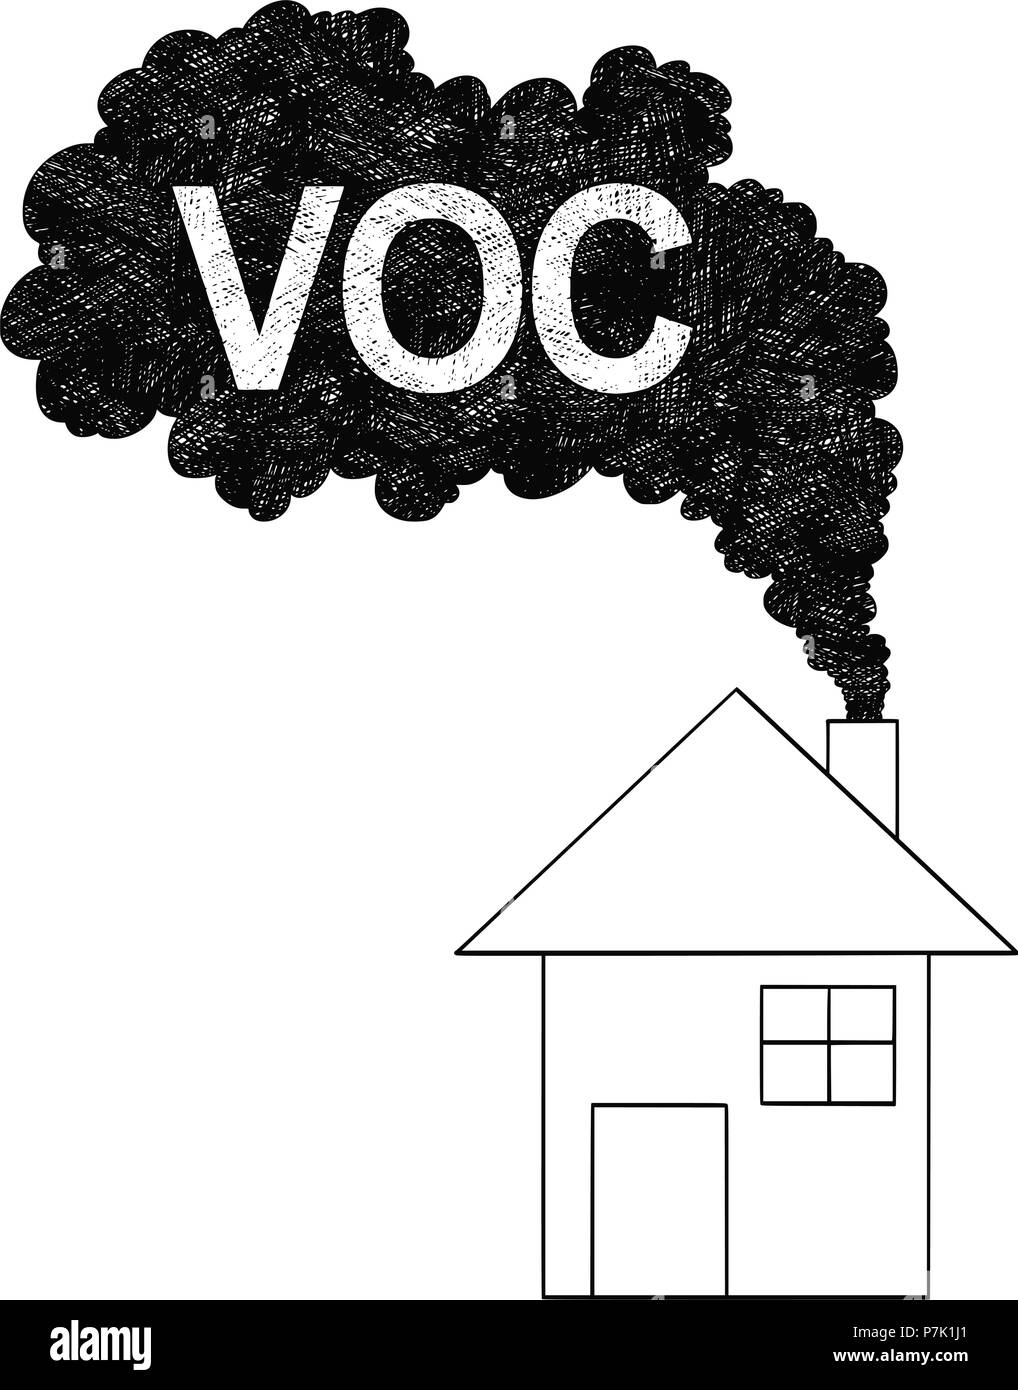 Vektor Künstlerische Zeichnung Abbildung: Rauch aus dem Schornstein, VOC oder Flüchtige organische Verbindung Luftverschmutzung Konzept Stock Vektor